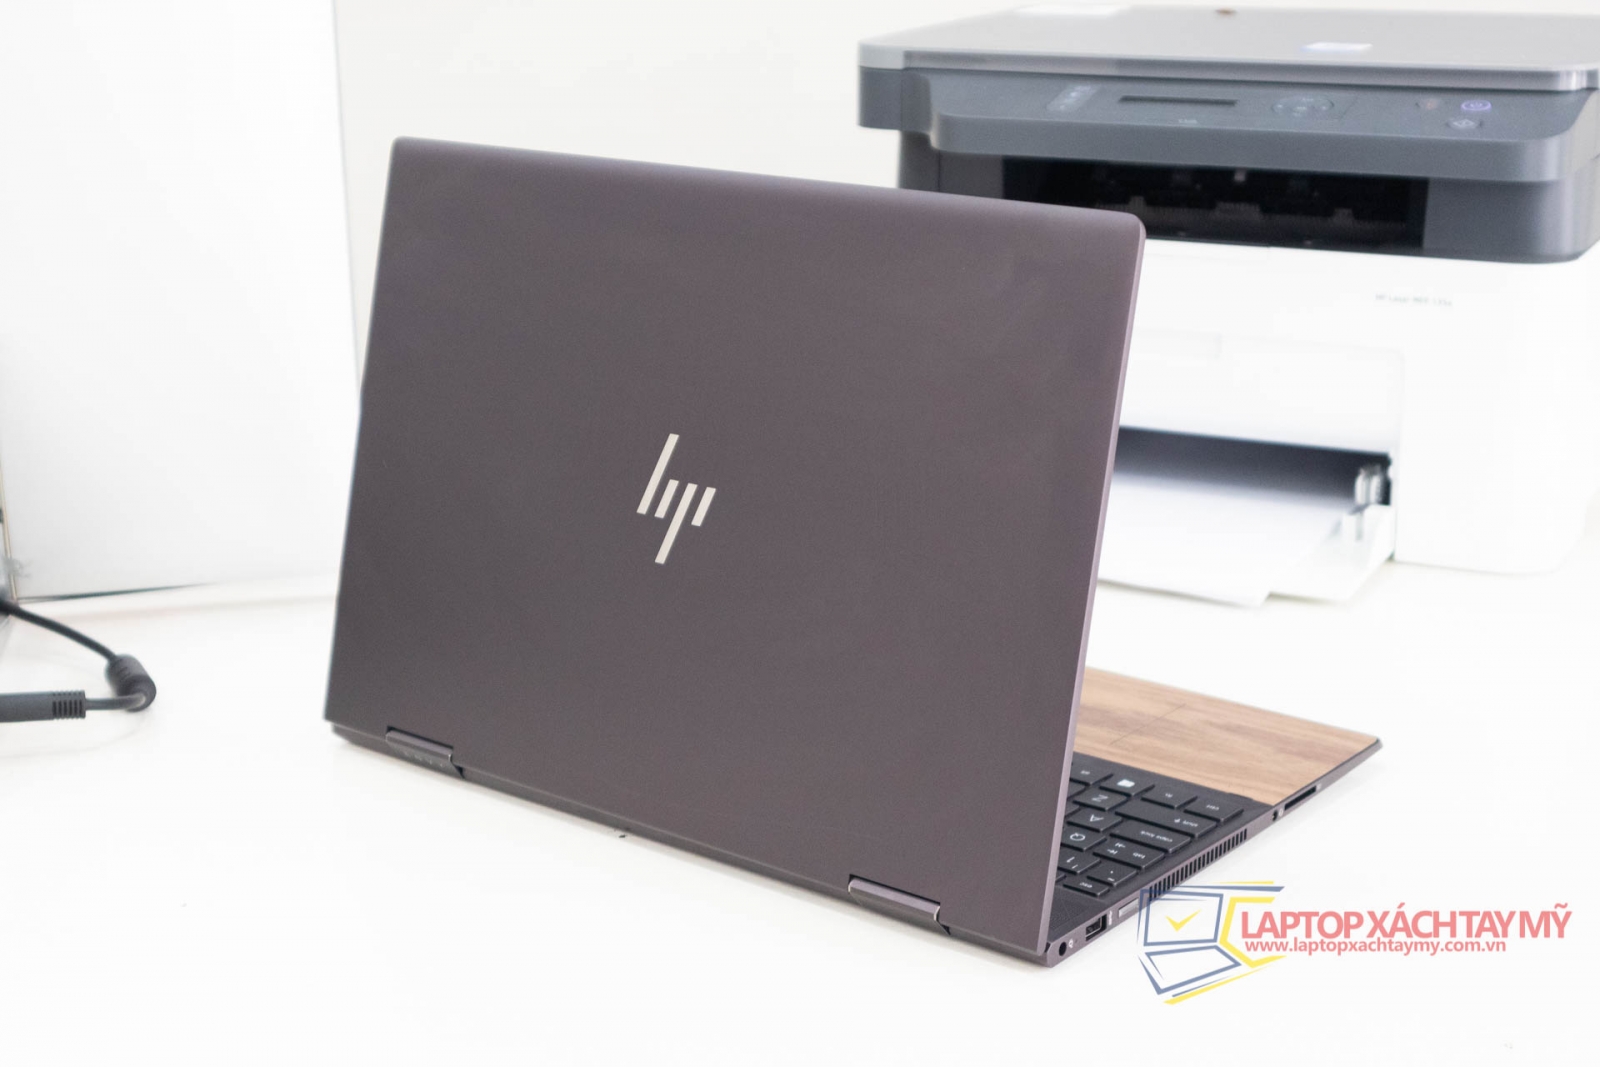 Laptop cũ like new HP Envy 15 x360 - AMD Ryzen 3 3300U, Ram 12G, SSD 256G, 15.6 IN FH